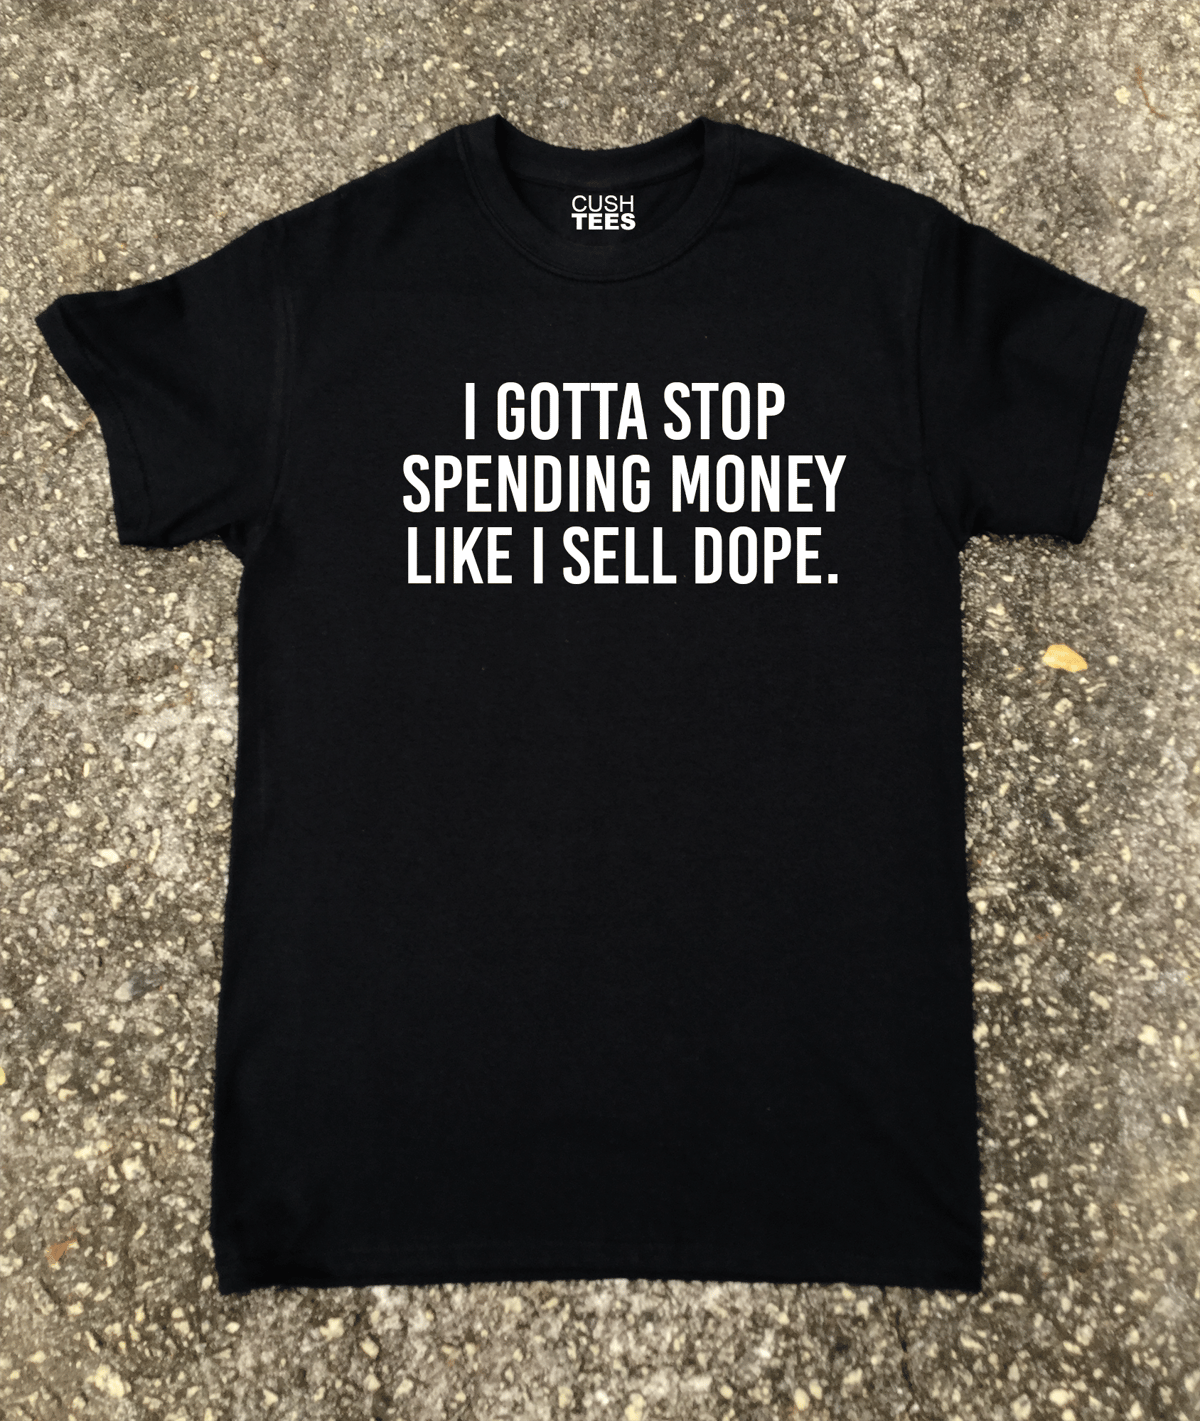 I gotta stop spending money Like I sell dope (T-shirt) | CUSH TEES